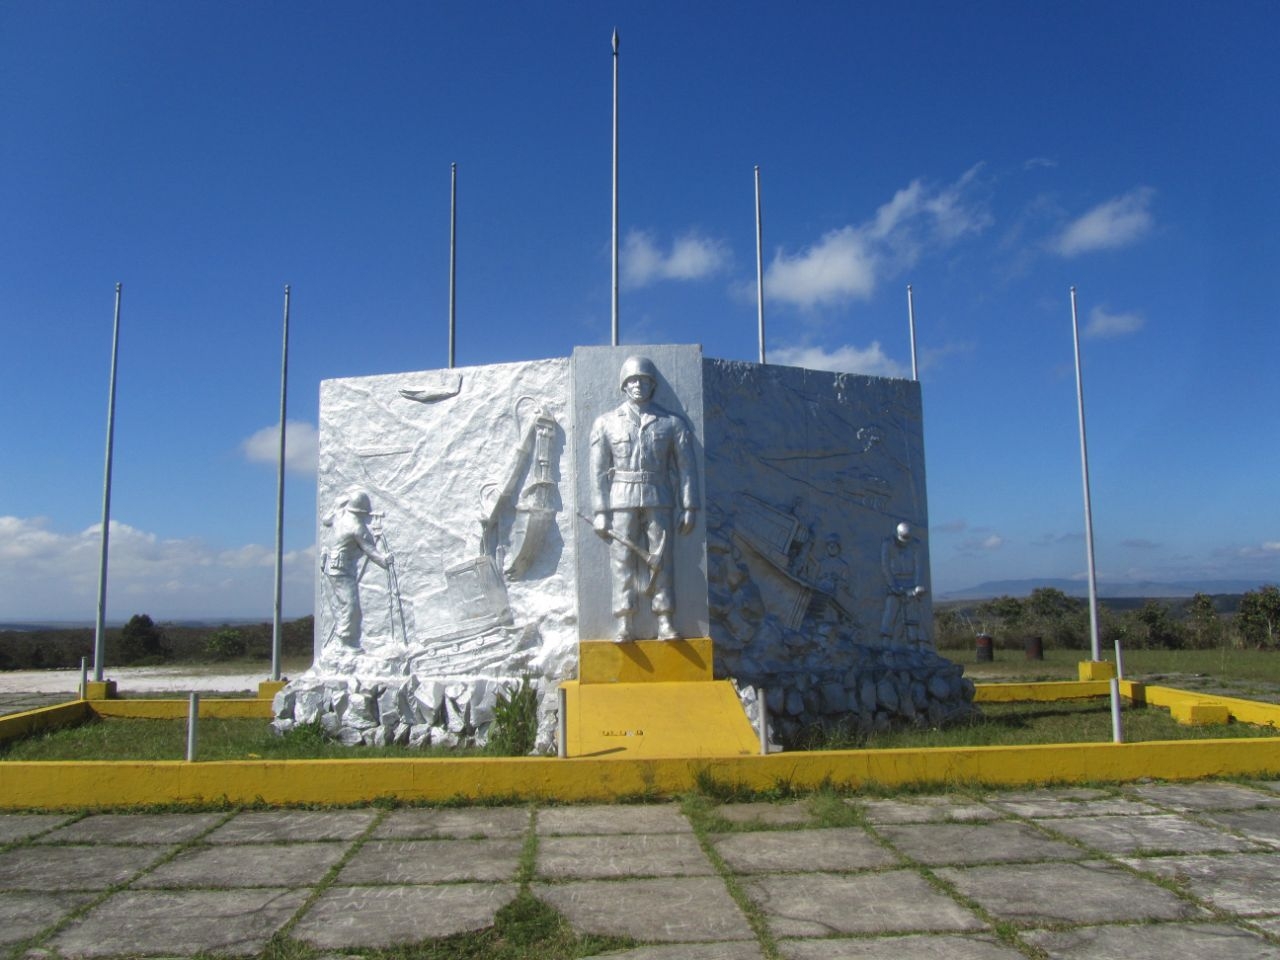 Цитадель, памятник солдату-пионеру и местные маландрос. Ч.40 Национальный парк Канайма, Венесуэла